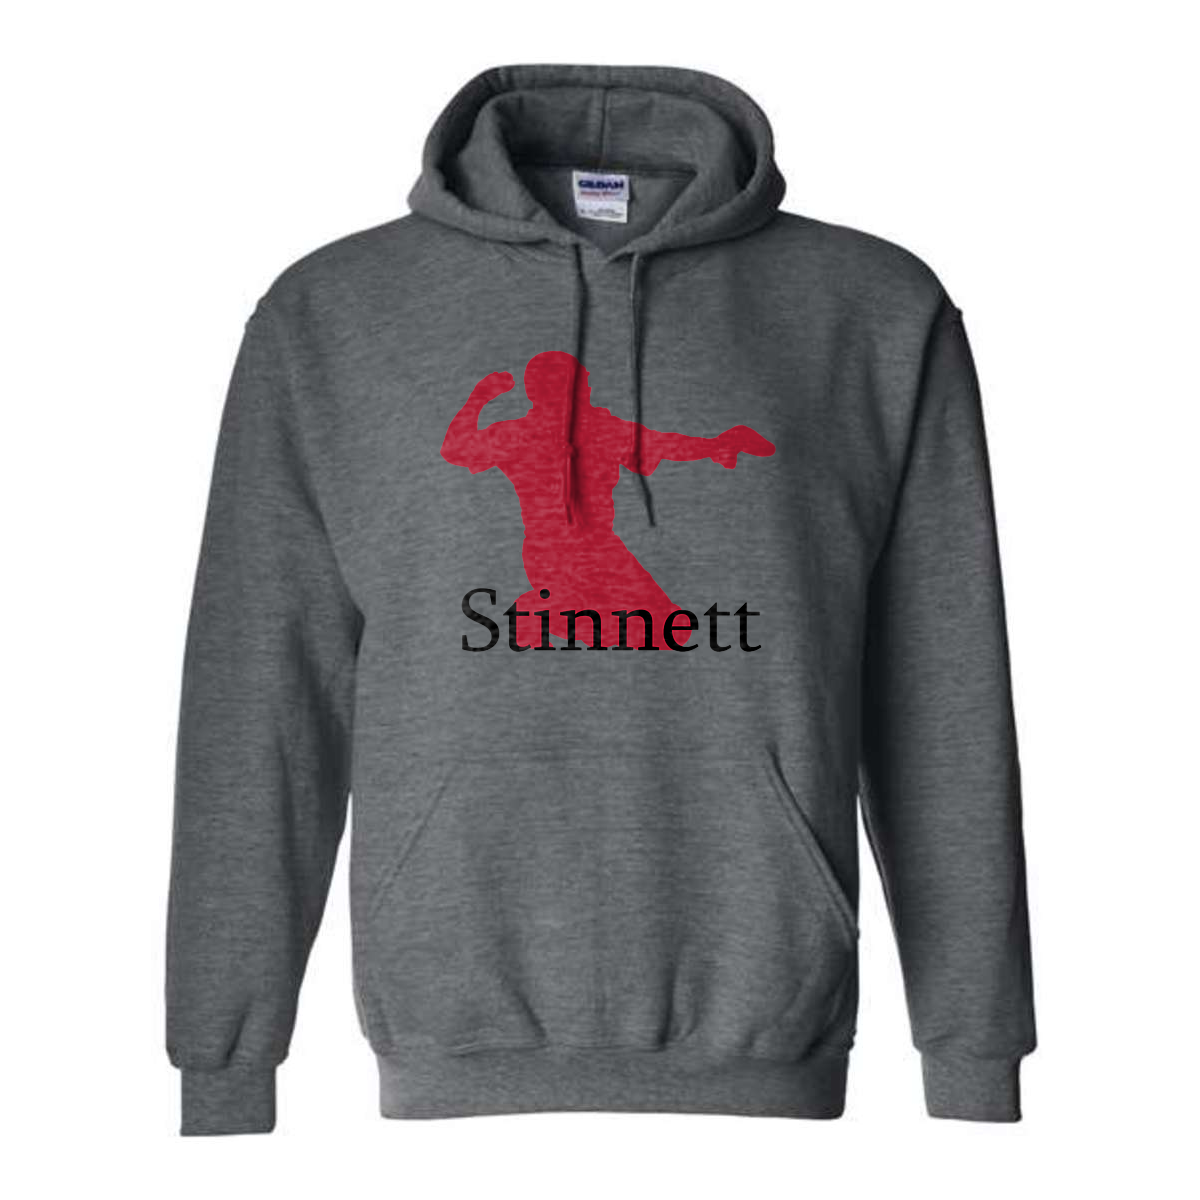 GT Stinnett Logo Hoodie